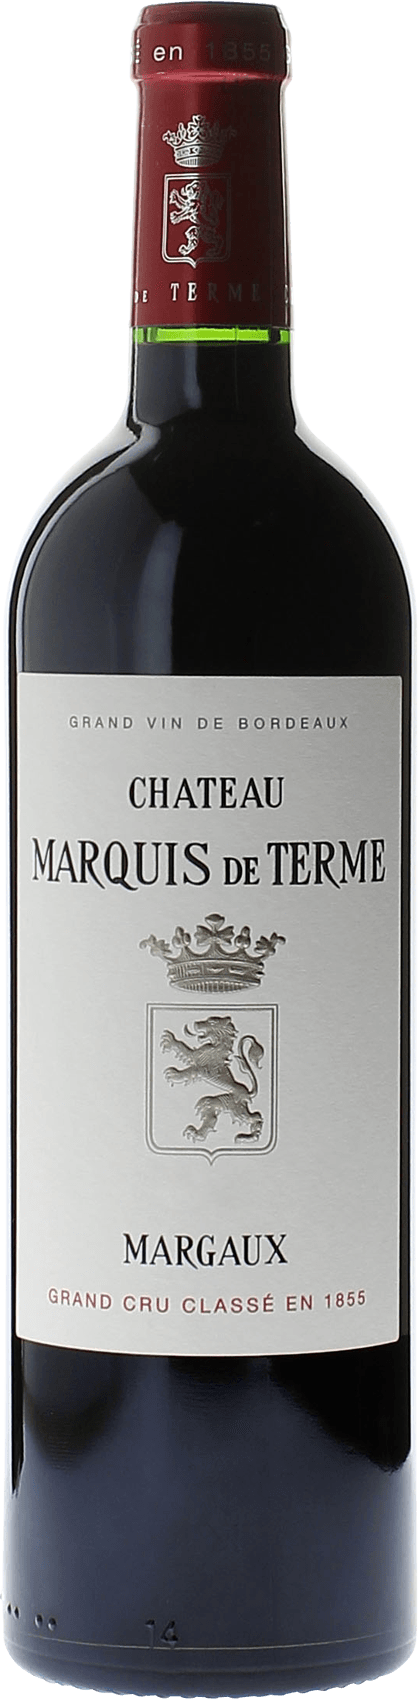 Marquis de terme 2006 4me Grand cru class Margaux, Bordeaux rouge